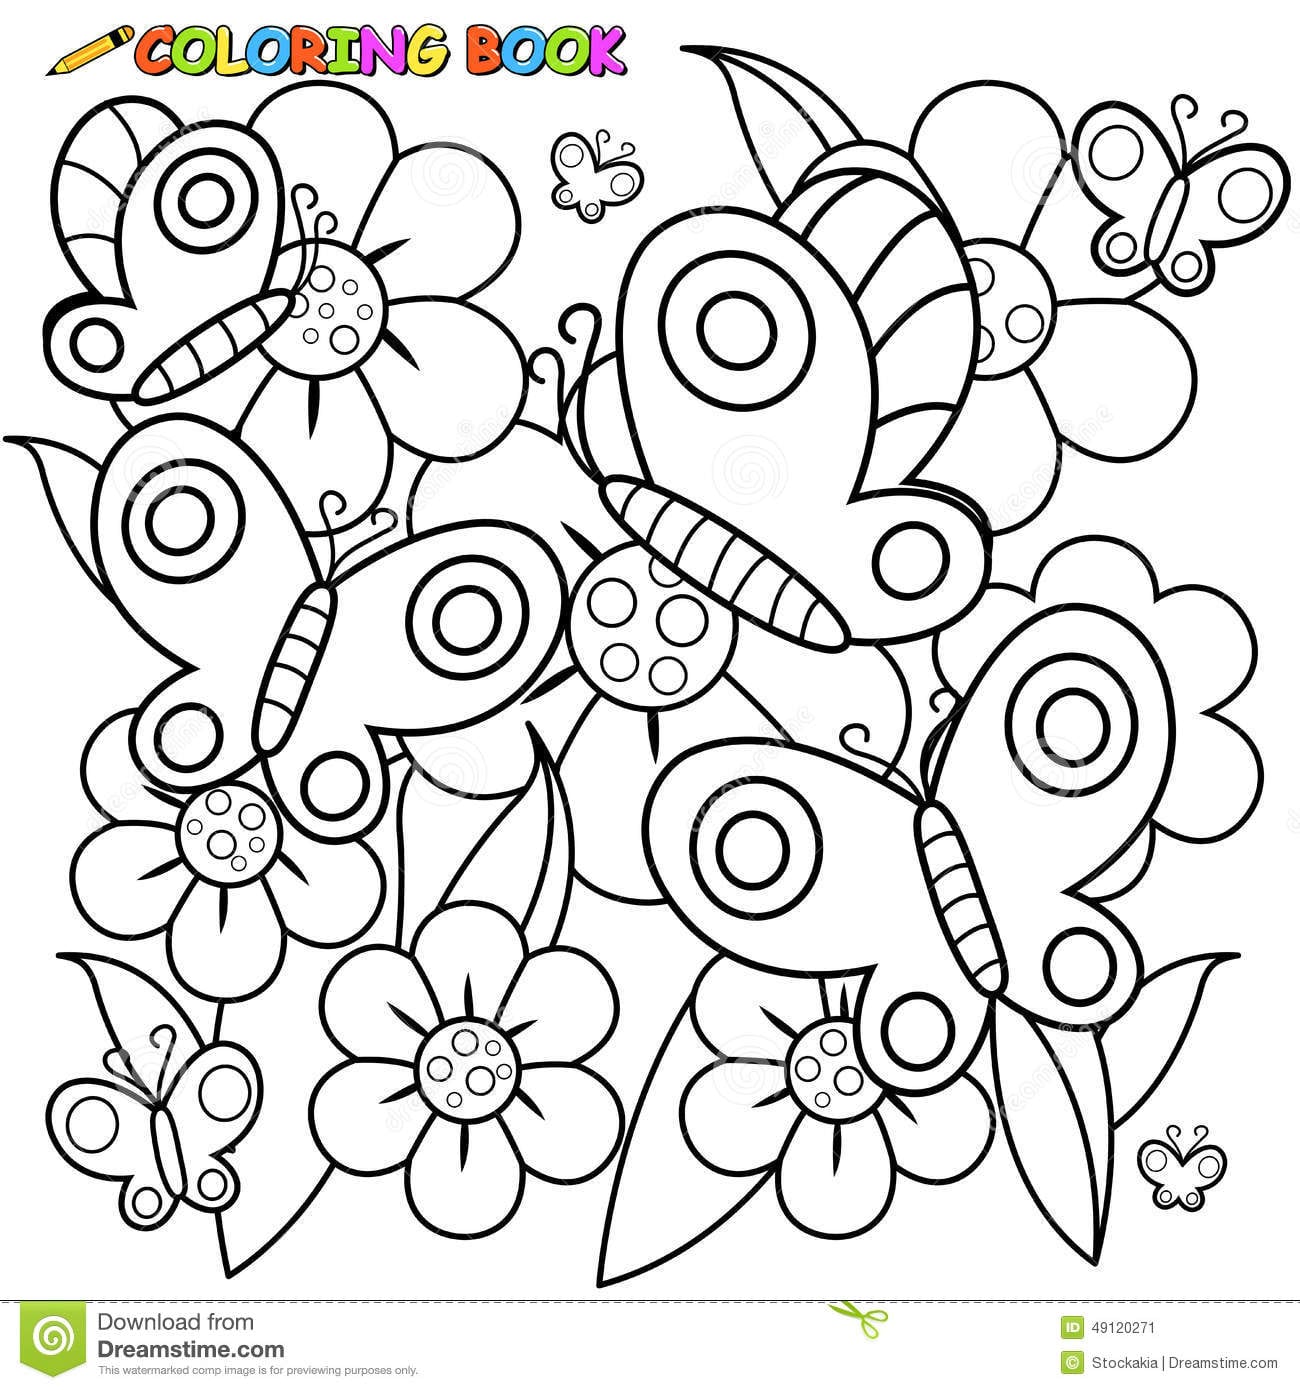 Desenhos Para Colorir De Flores E Borboletas â Pampekids Net